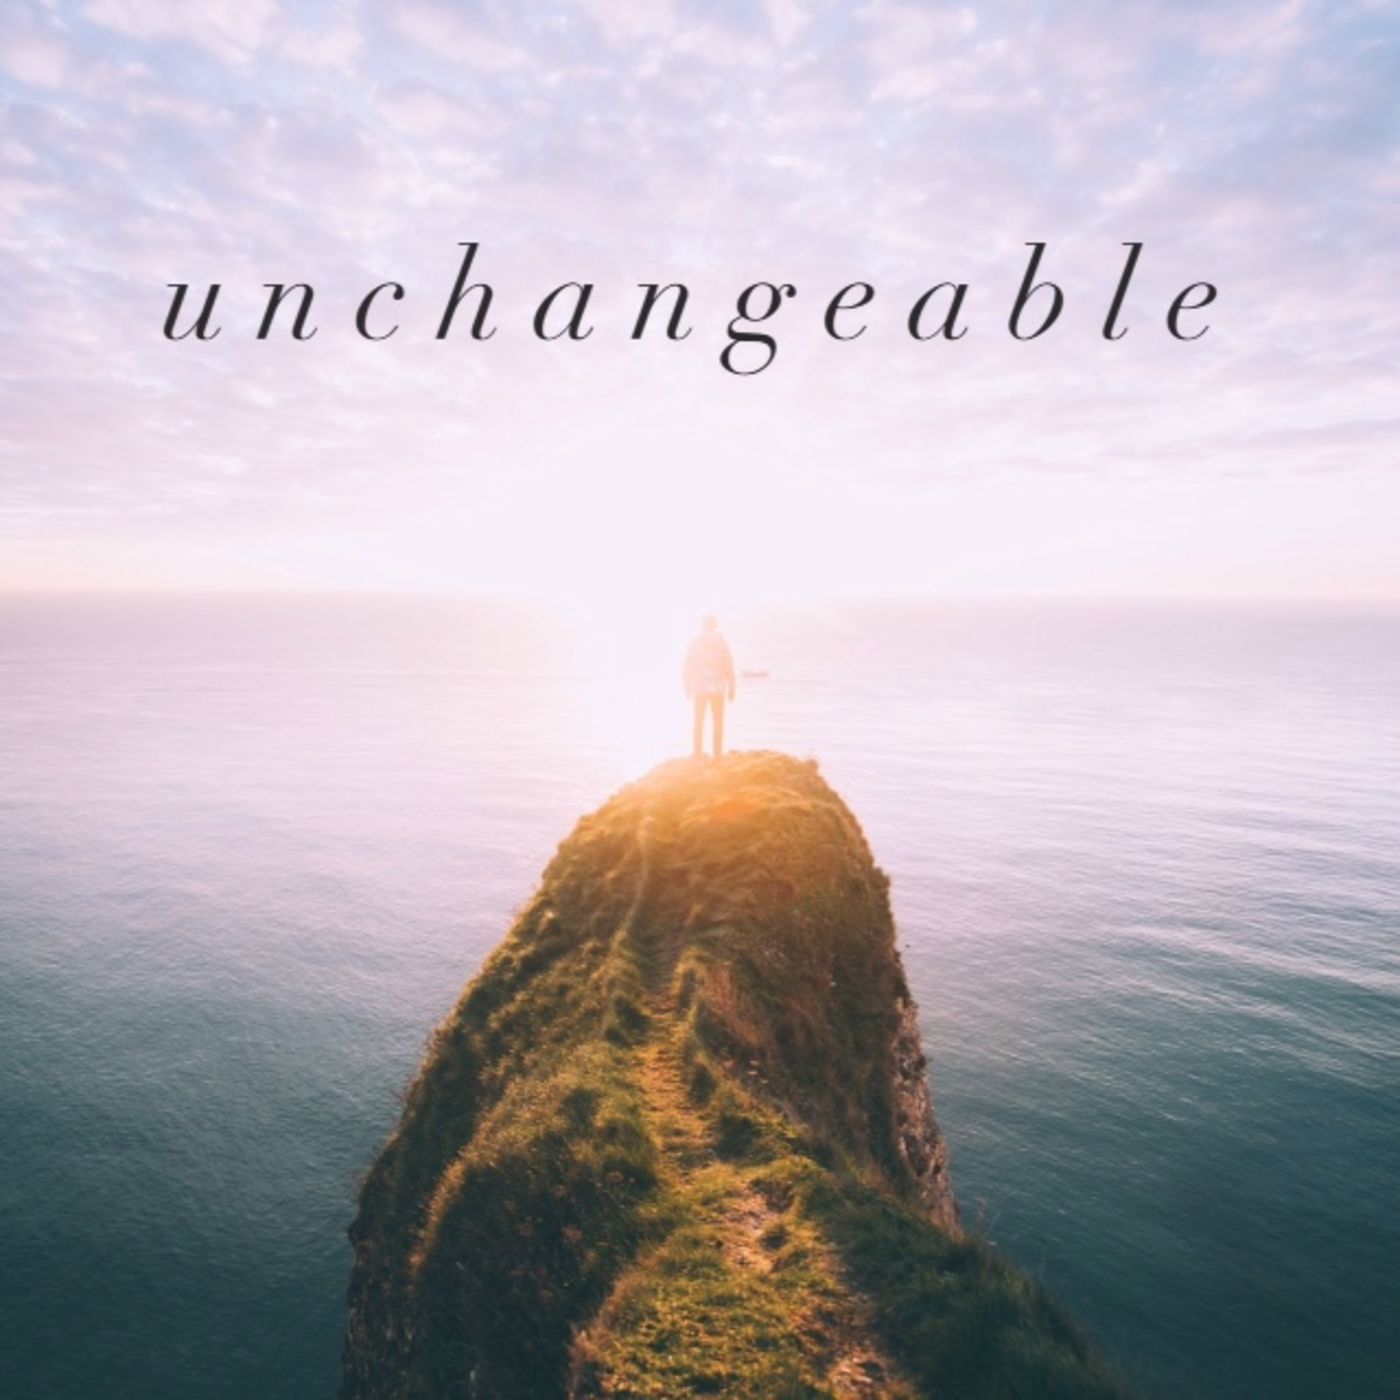 Change vs The Unchangeable